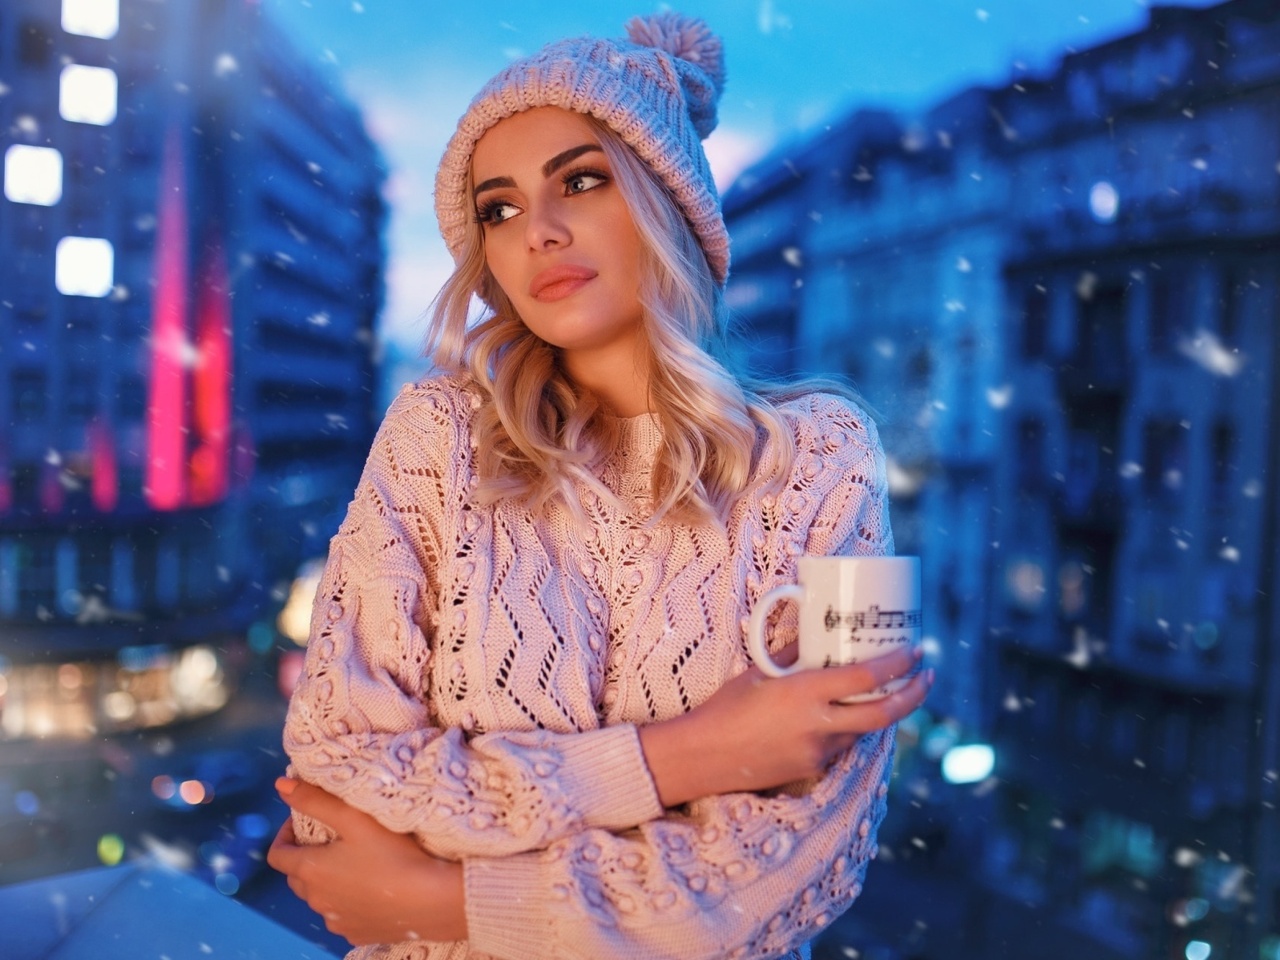 Winter stylish woman wallpaper 1280x960